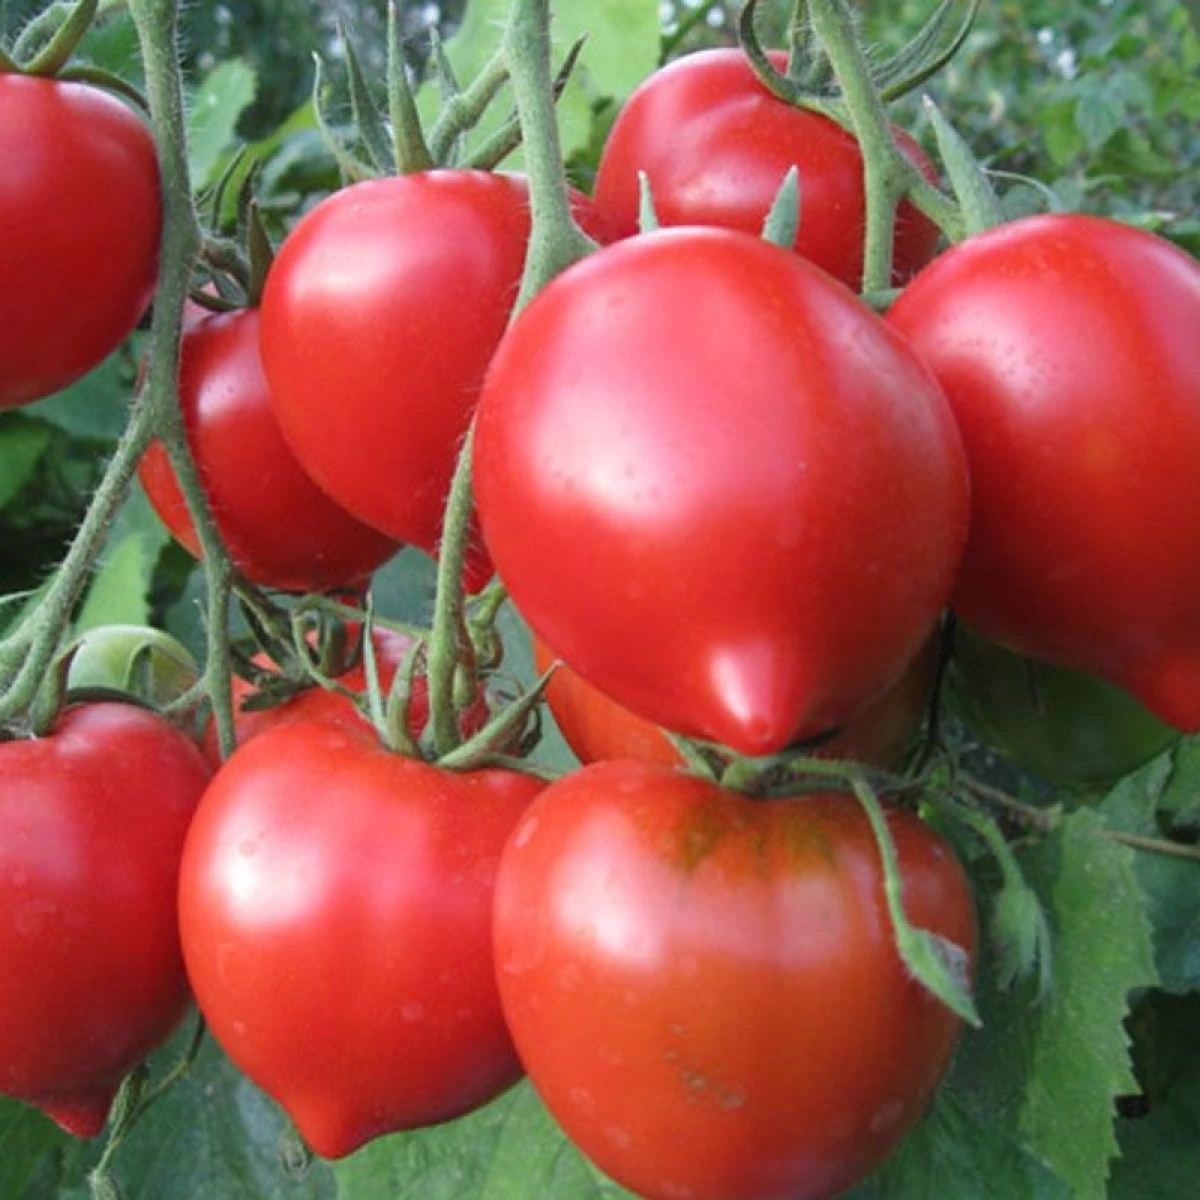 помидоры буденовка фото